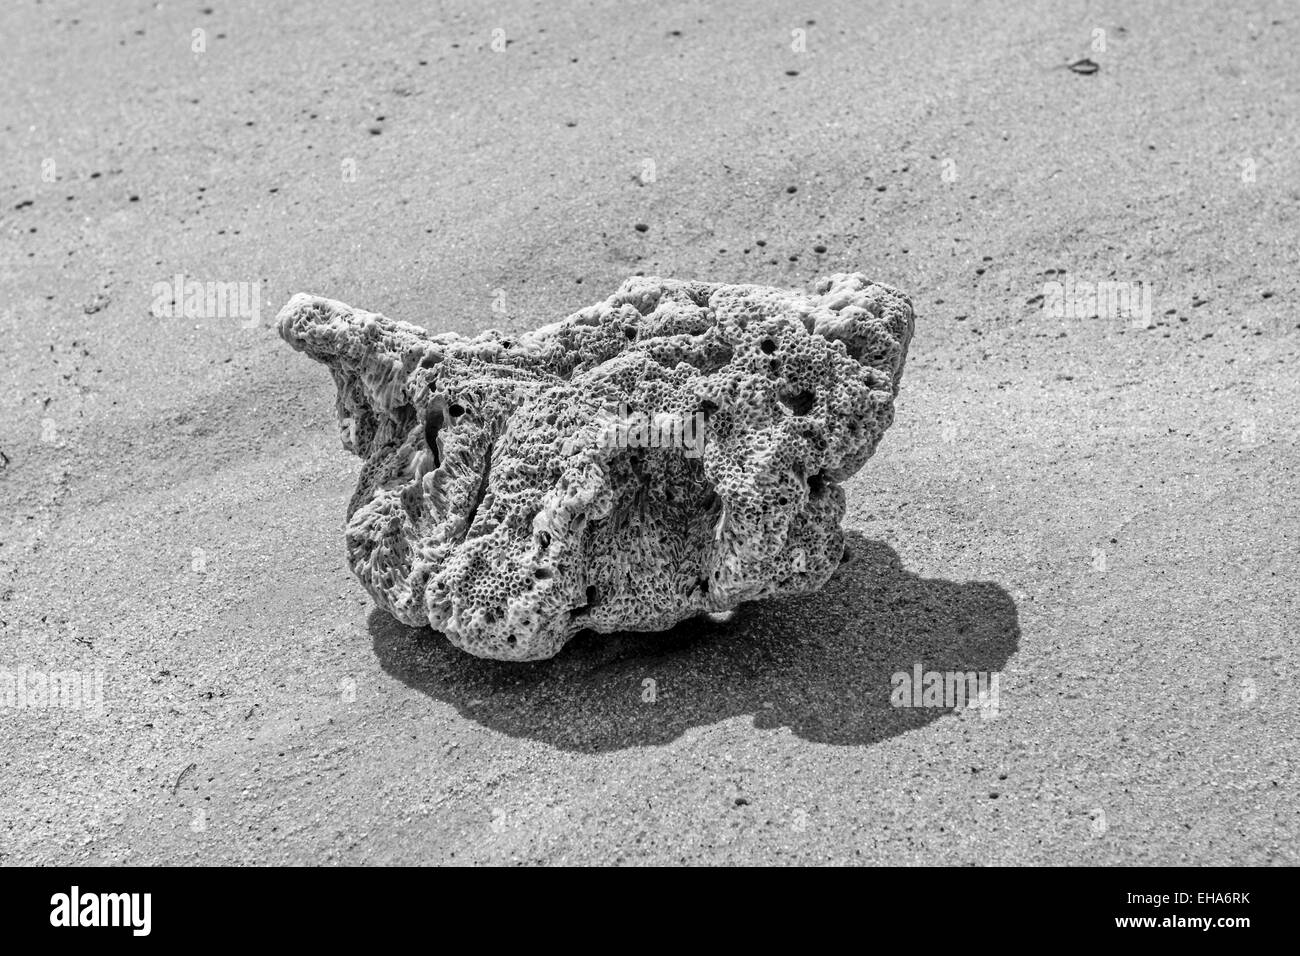 Chiudere fino in bianco e nero ancora immagine di vita di un corallo su di una spiaggia di sabbia Foto Stock